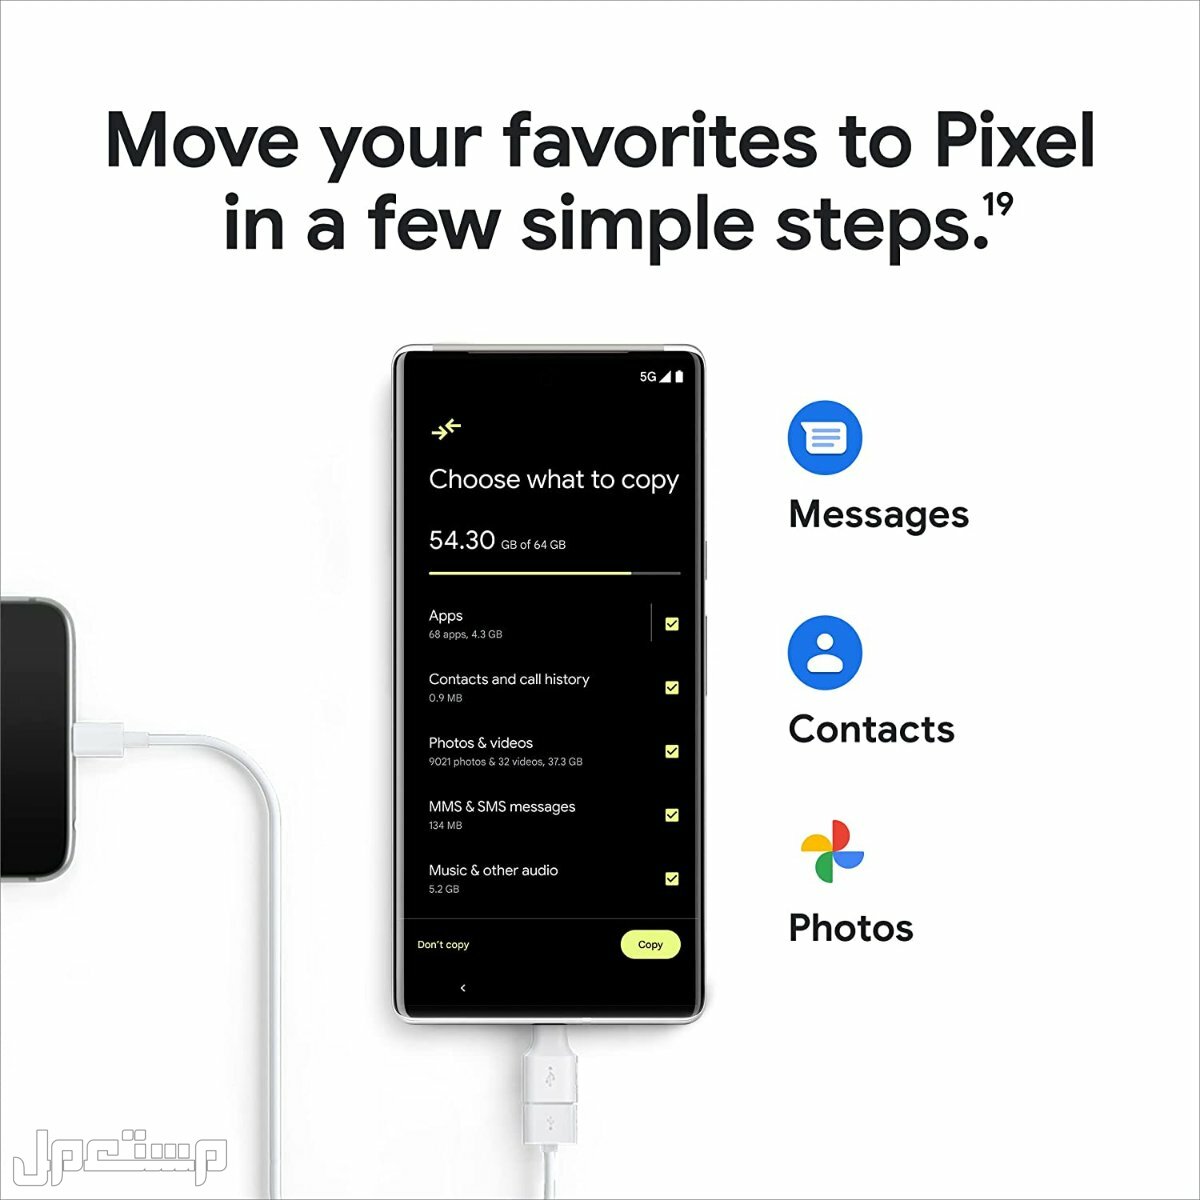 هواتف جوجل: كل ما تحتاج لمعرفته حول هواتف Pixel في الإمارات العربية المتحدة جوال قوقل